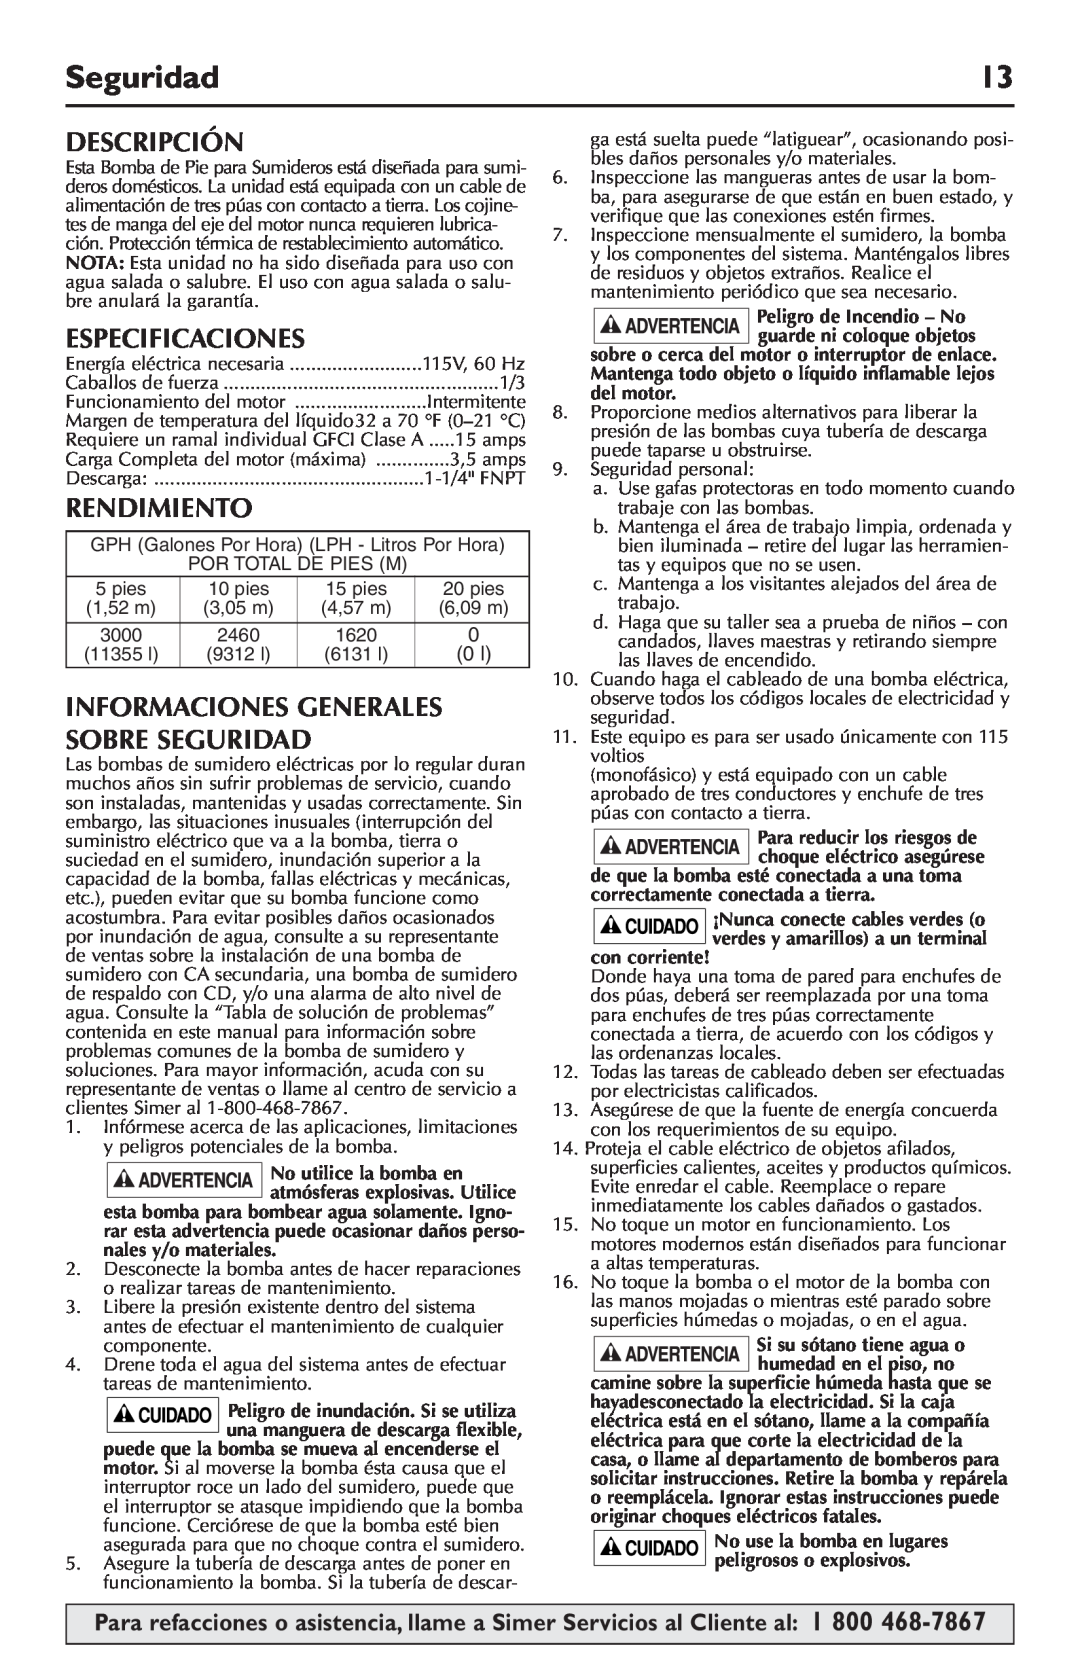 Simer Pumps 5020B-04 owner manual Descripción, Especificaciones, Rendimiento, Informaciones Generales Sobre Seguridad 